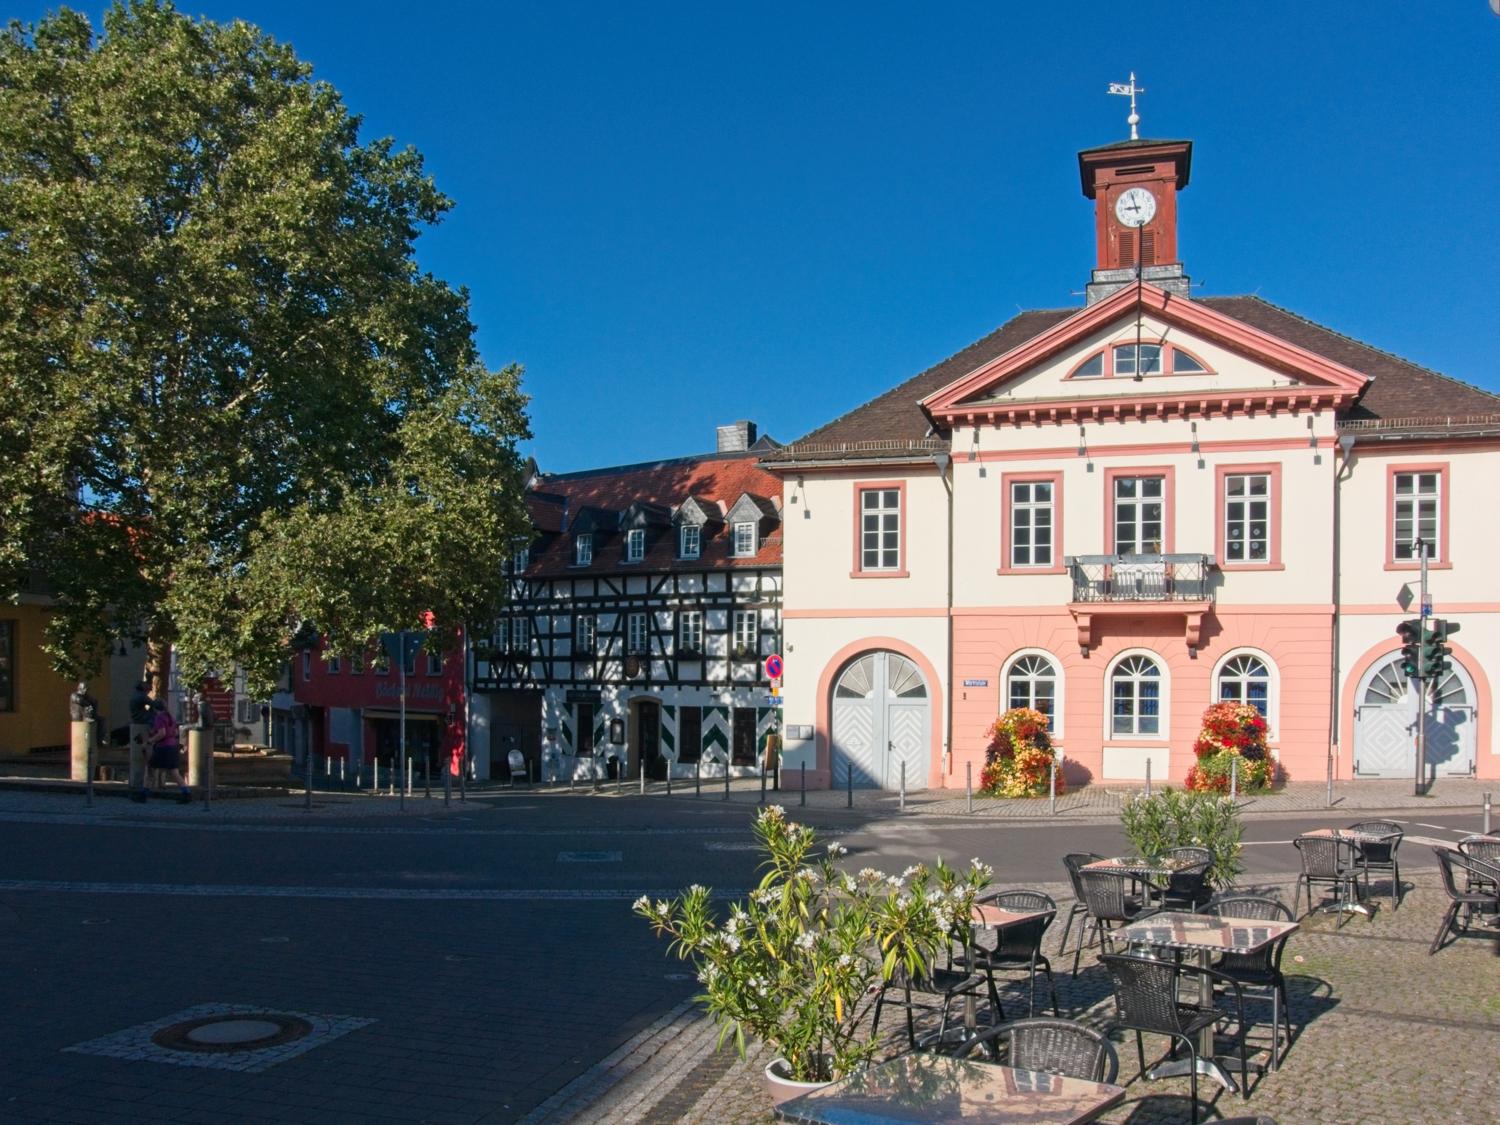 Marktplatz von Ober-Ingelheim mit dem alten Rathaus